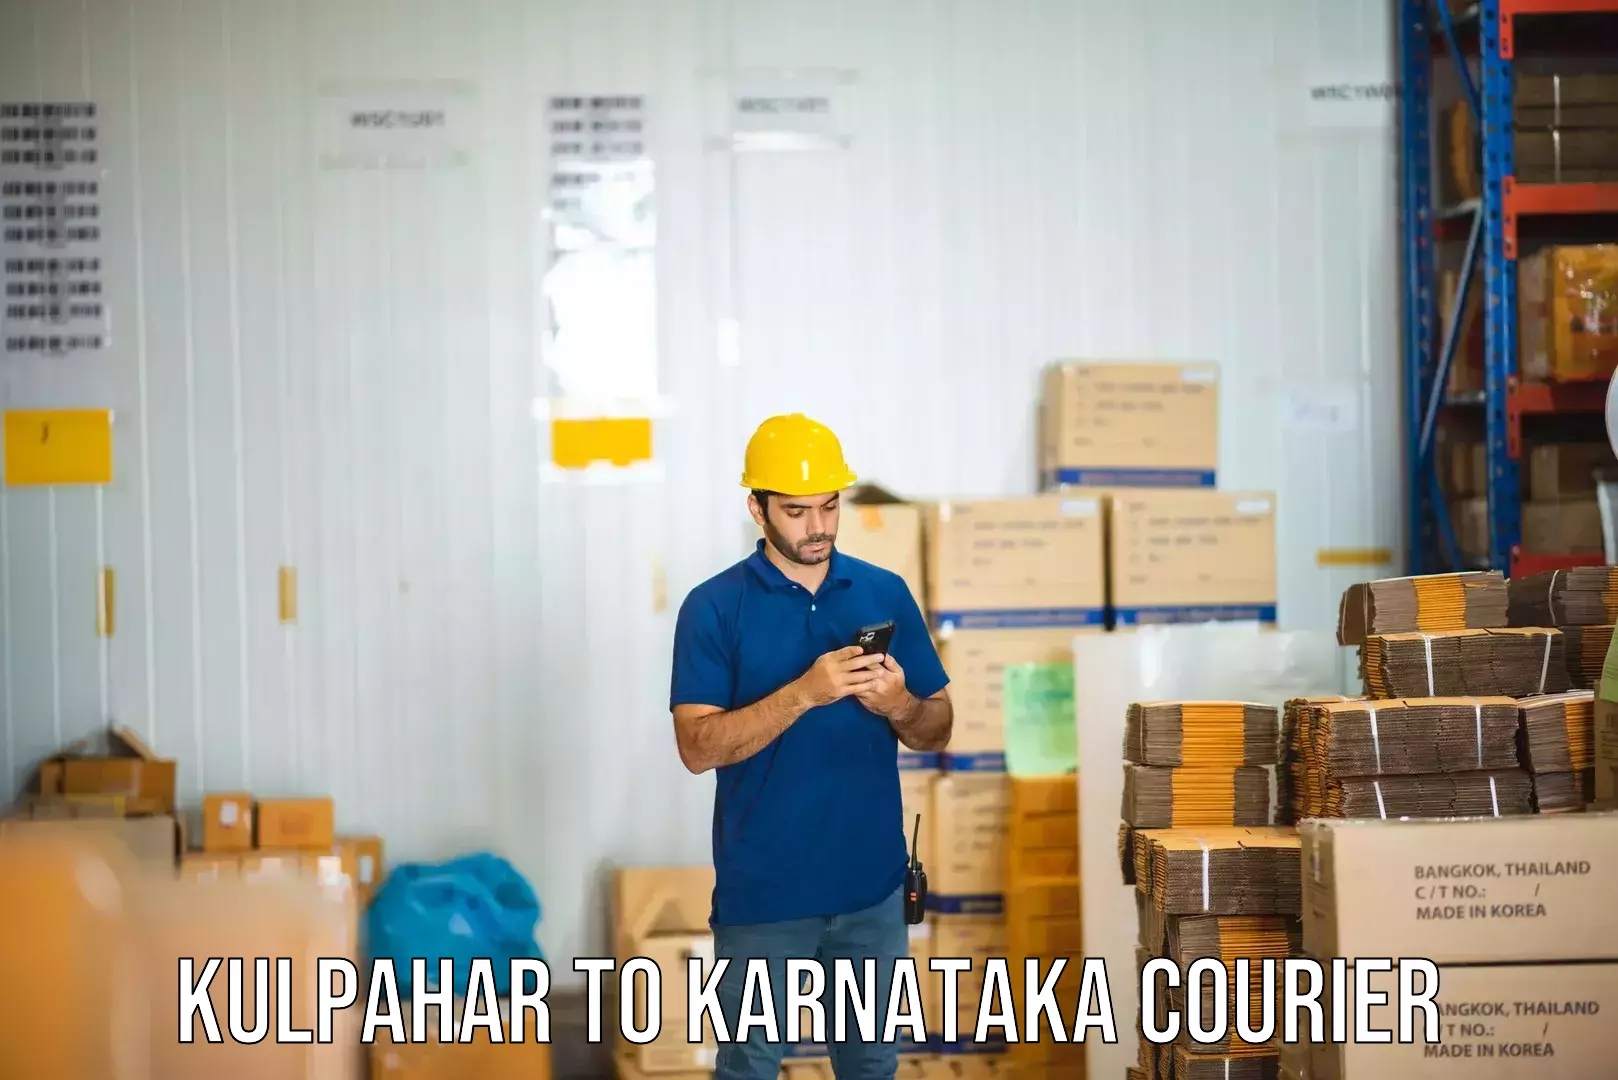 Efficient cargo handling Kulpahar to Anavatti